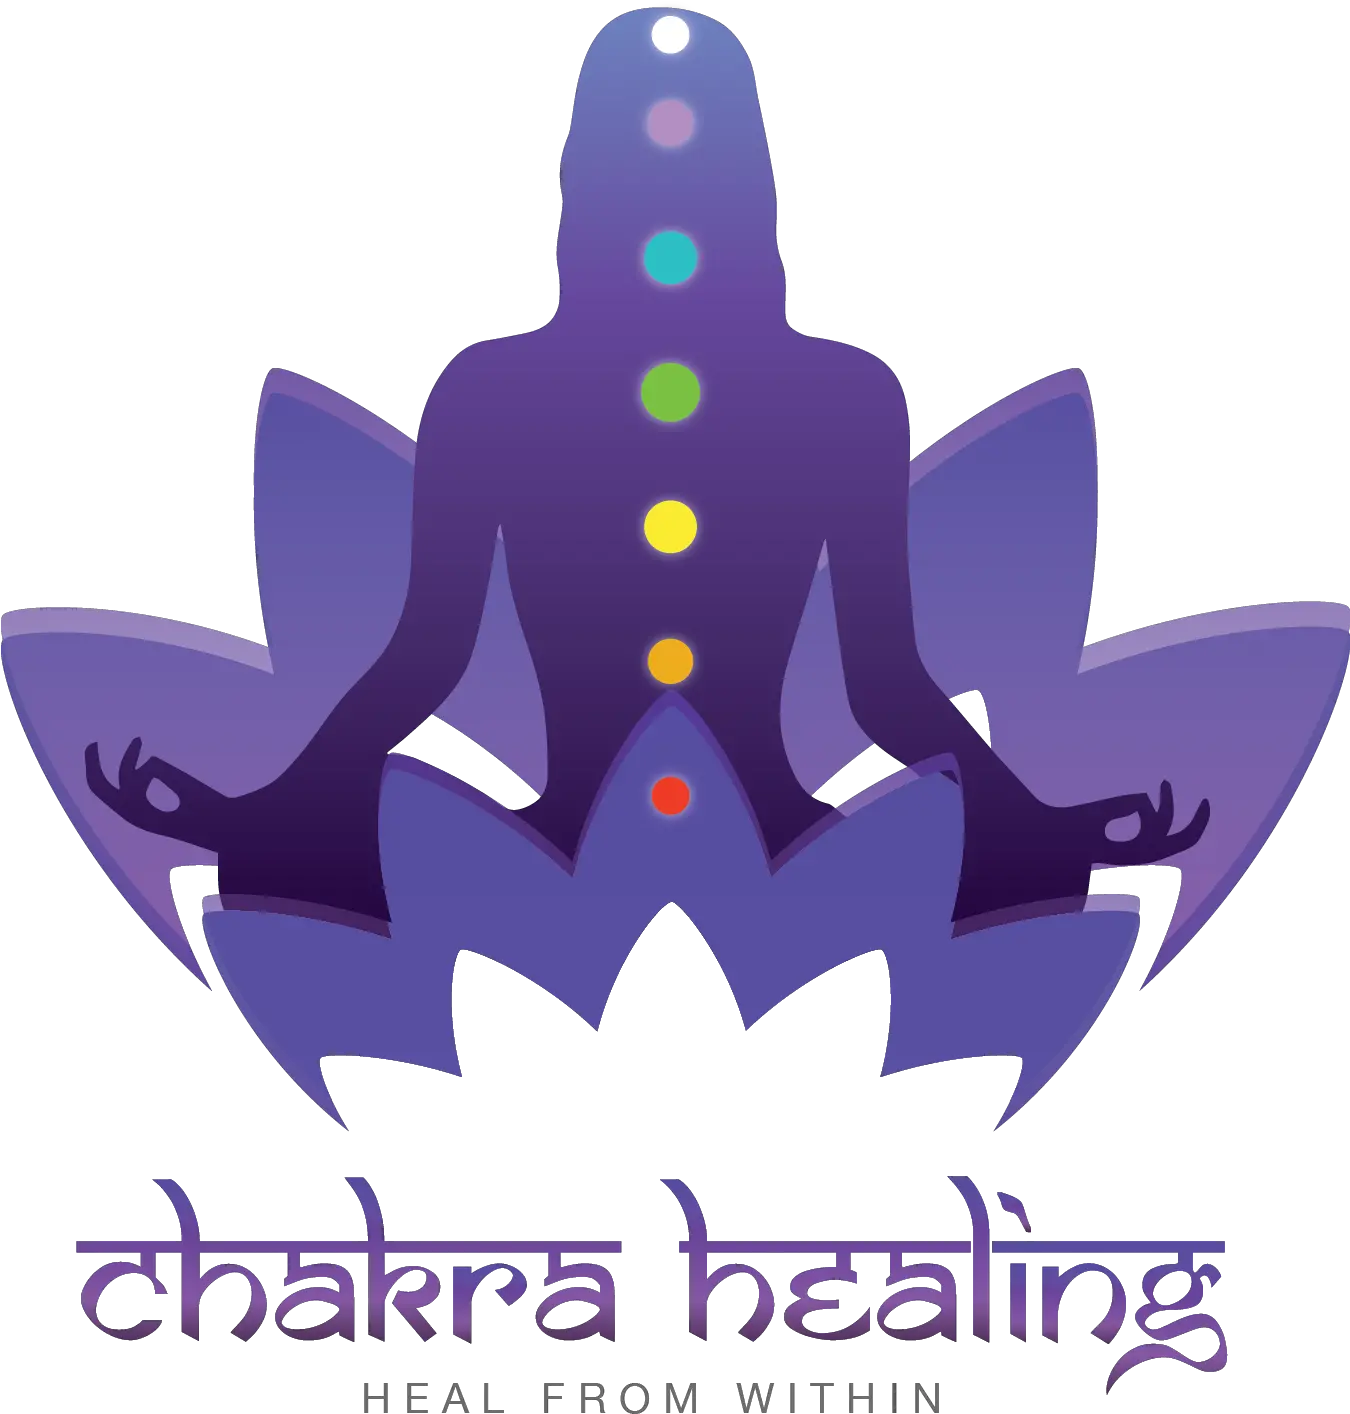 Chakra Healing Logo Png Image With No Transparent Meditation Chakra Png Healing Logo